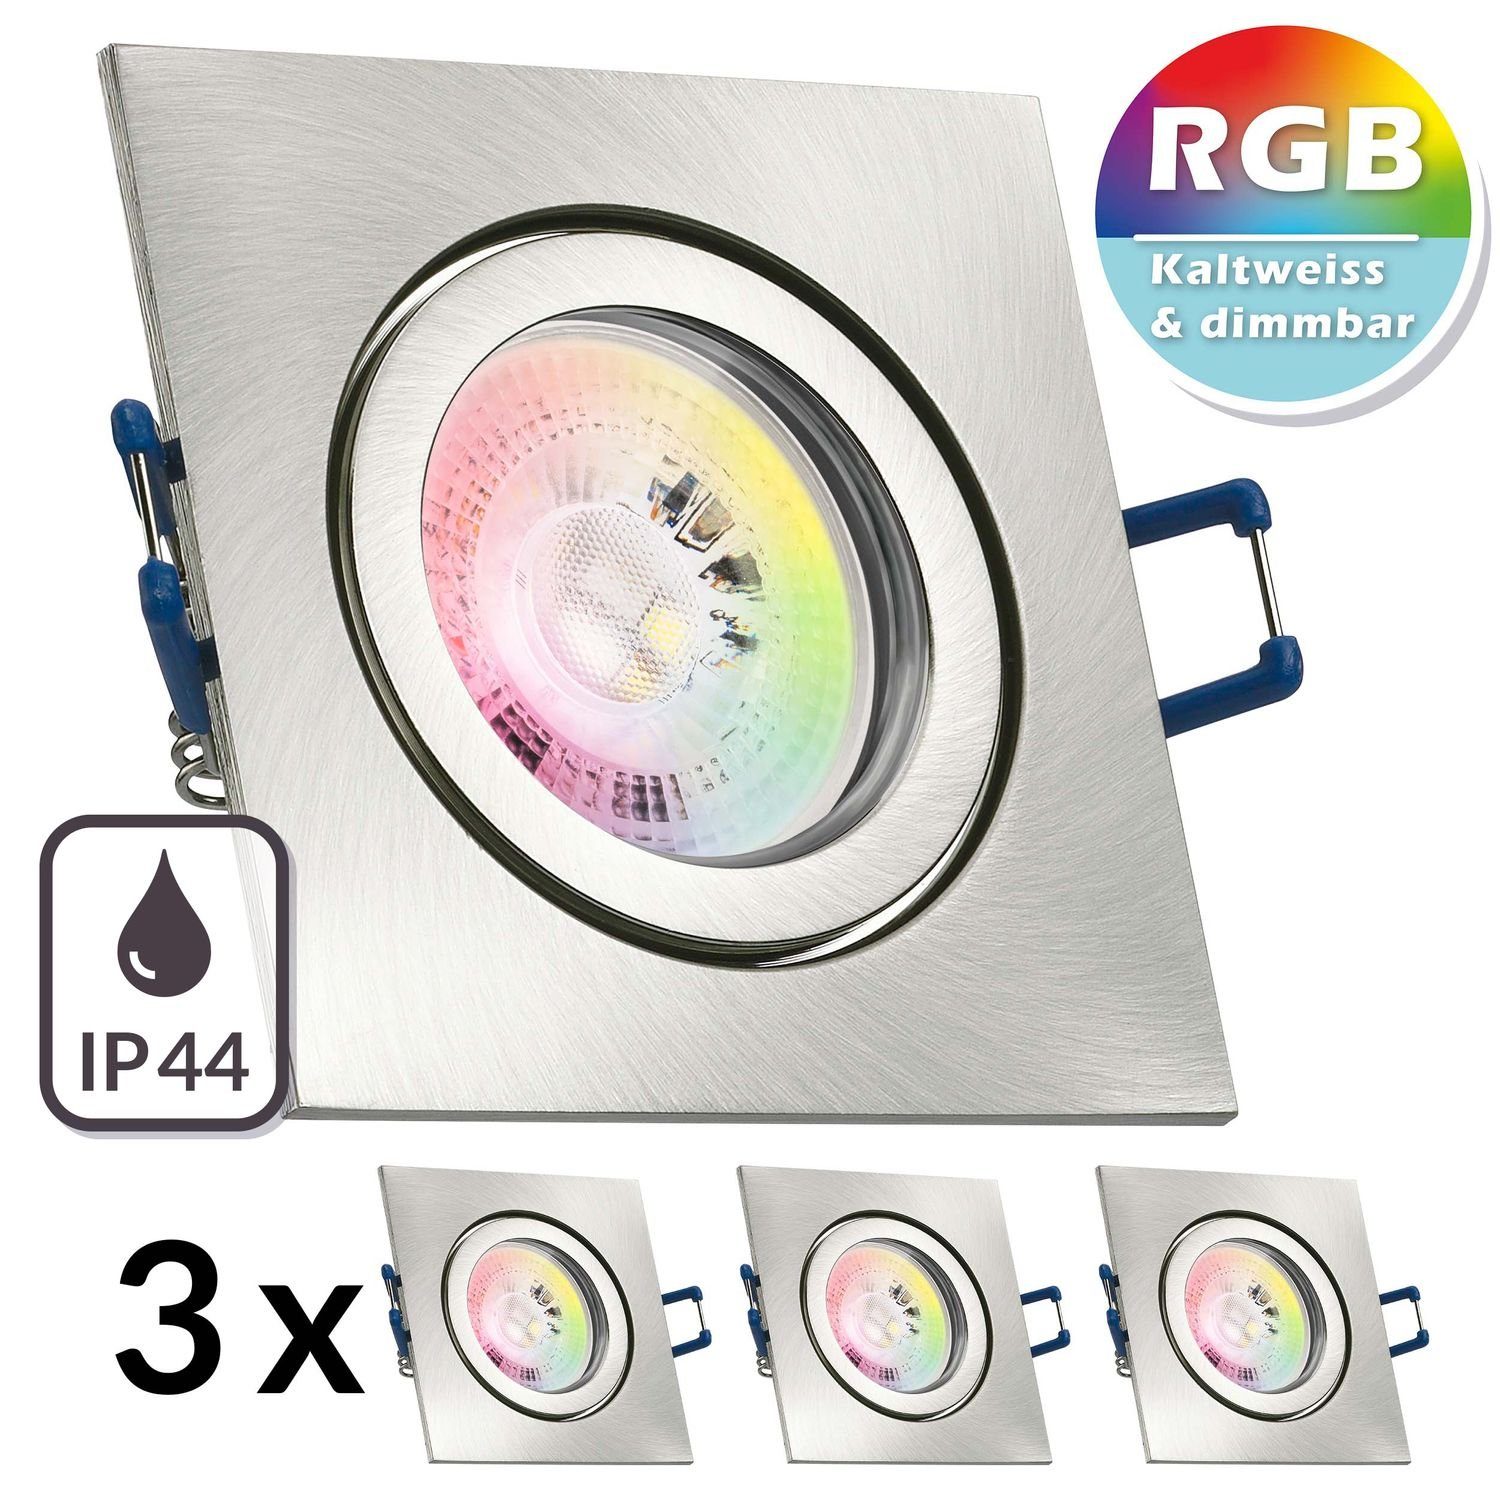 LEDANDO LED Einbaustrahler 3er IP44 RGB LED Einbaustrahler Set GU10 in edelstahl / silber gebürst